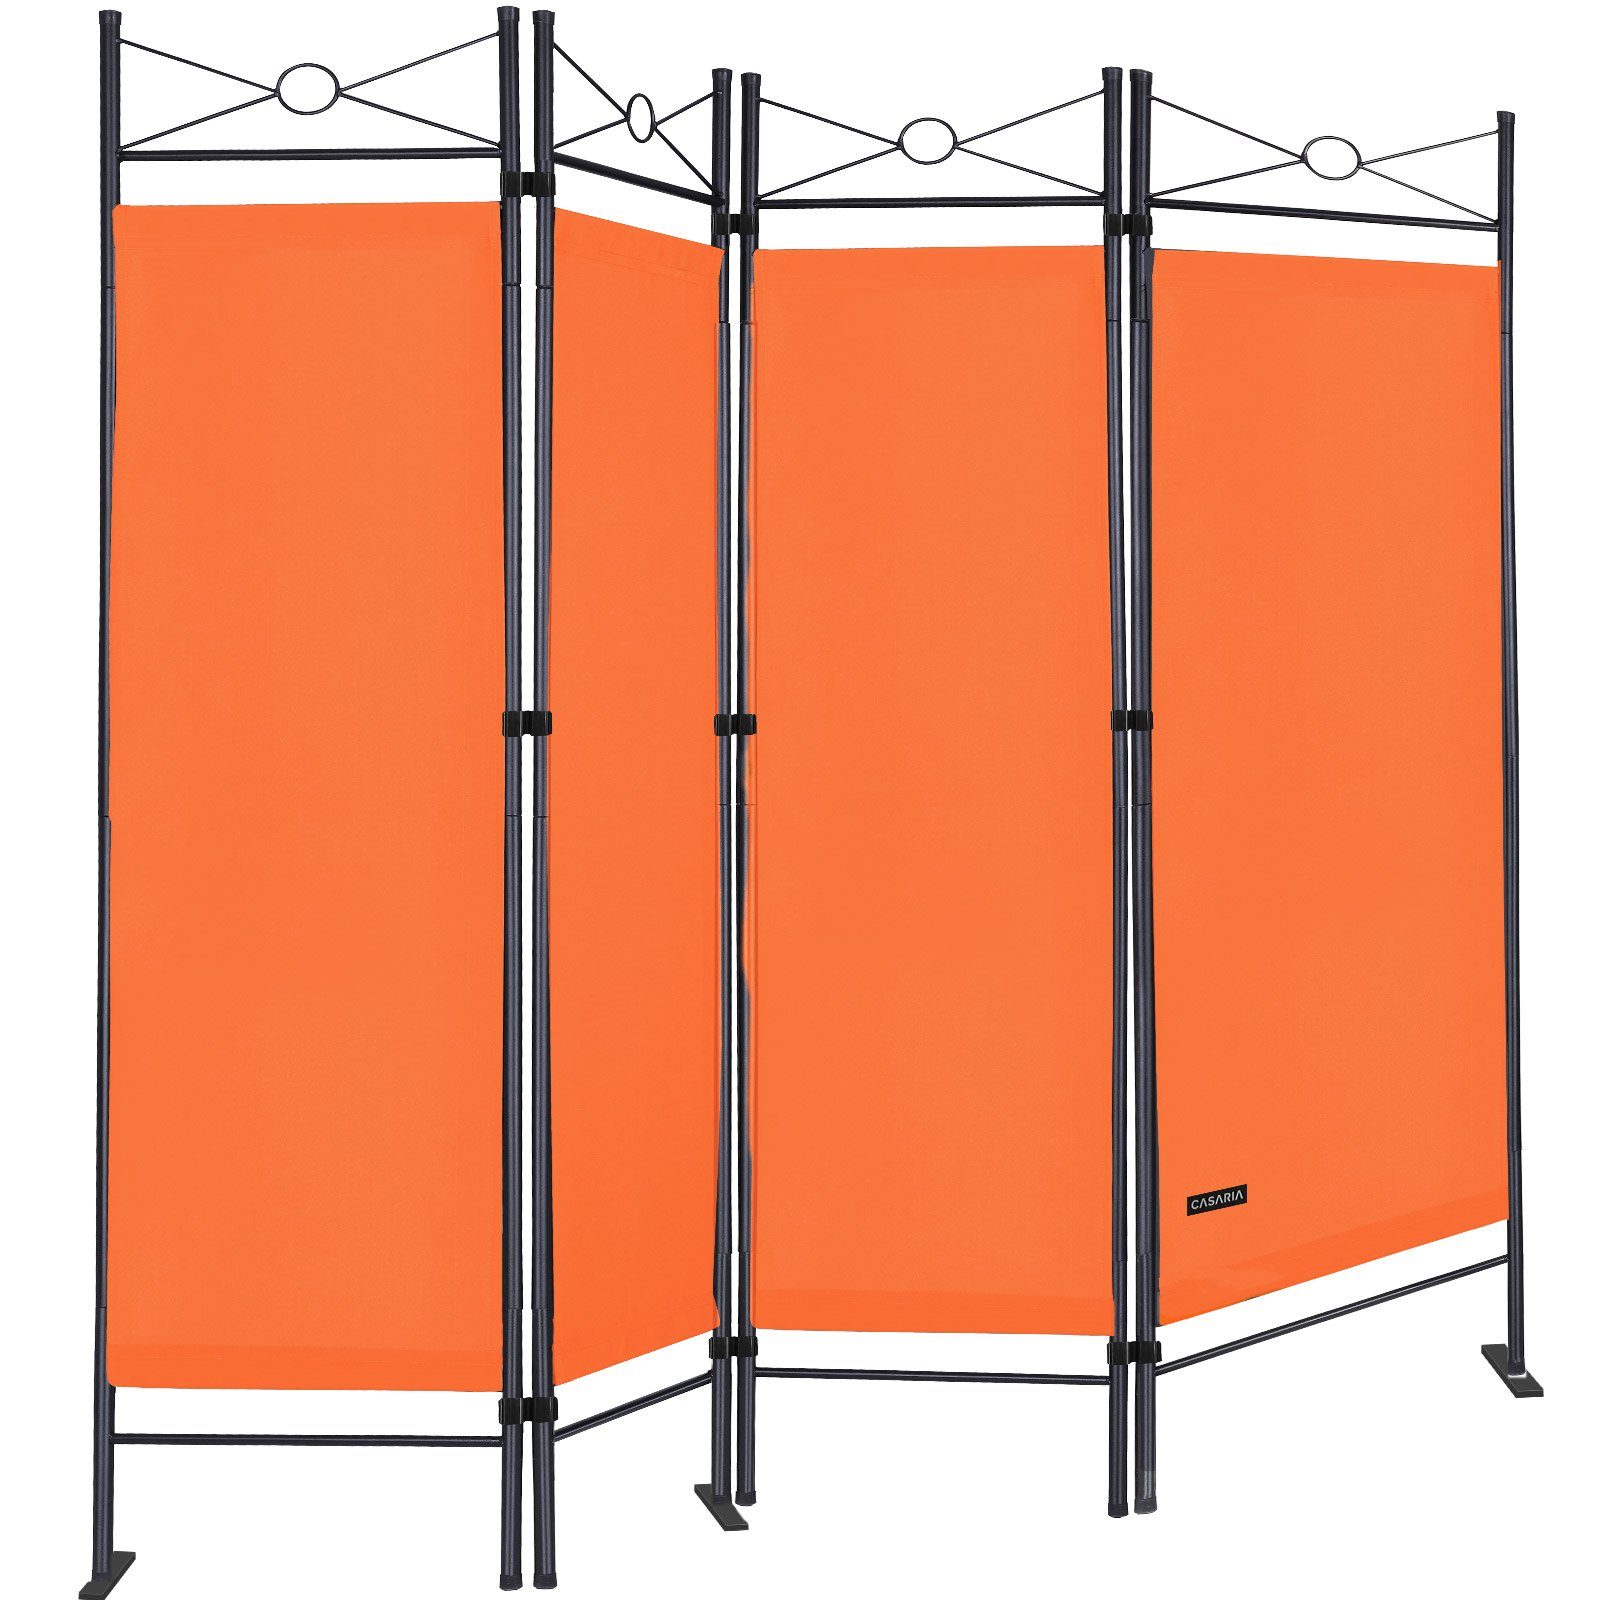 Casaria Paravent Lucca, 180x163cm Verstellbar Faltbar Stabil 4 teilig Indoor Trennwand Orange